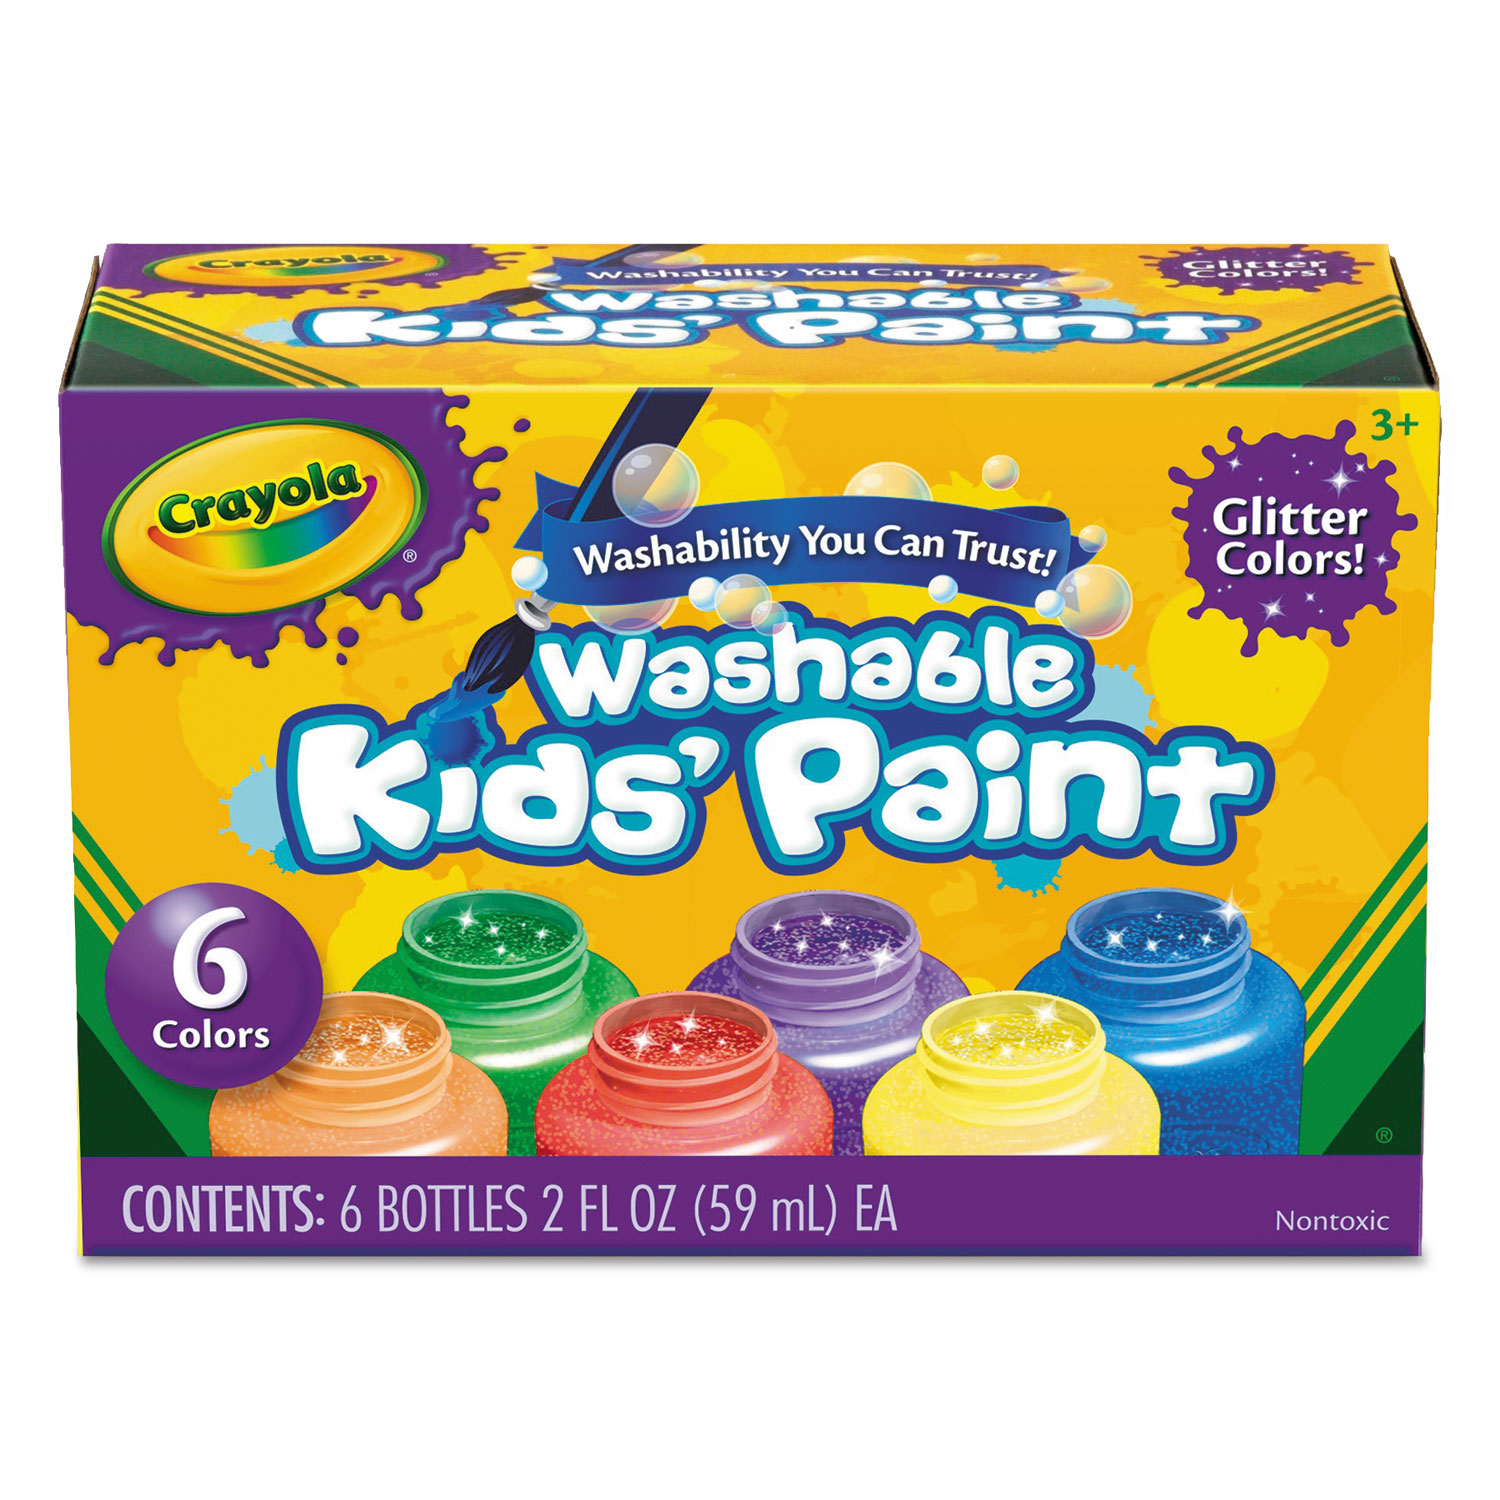 Crayola Washable Kids' Paint Set - 2 fl oz - 6 / Set - Yellow, White,  Orange, Green, Red, Blue - Thomas Business Center Inc